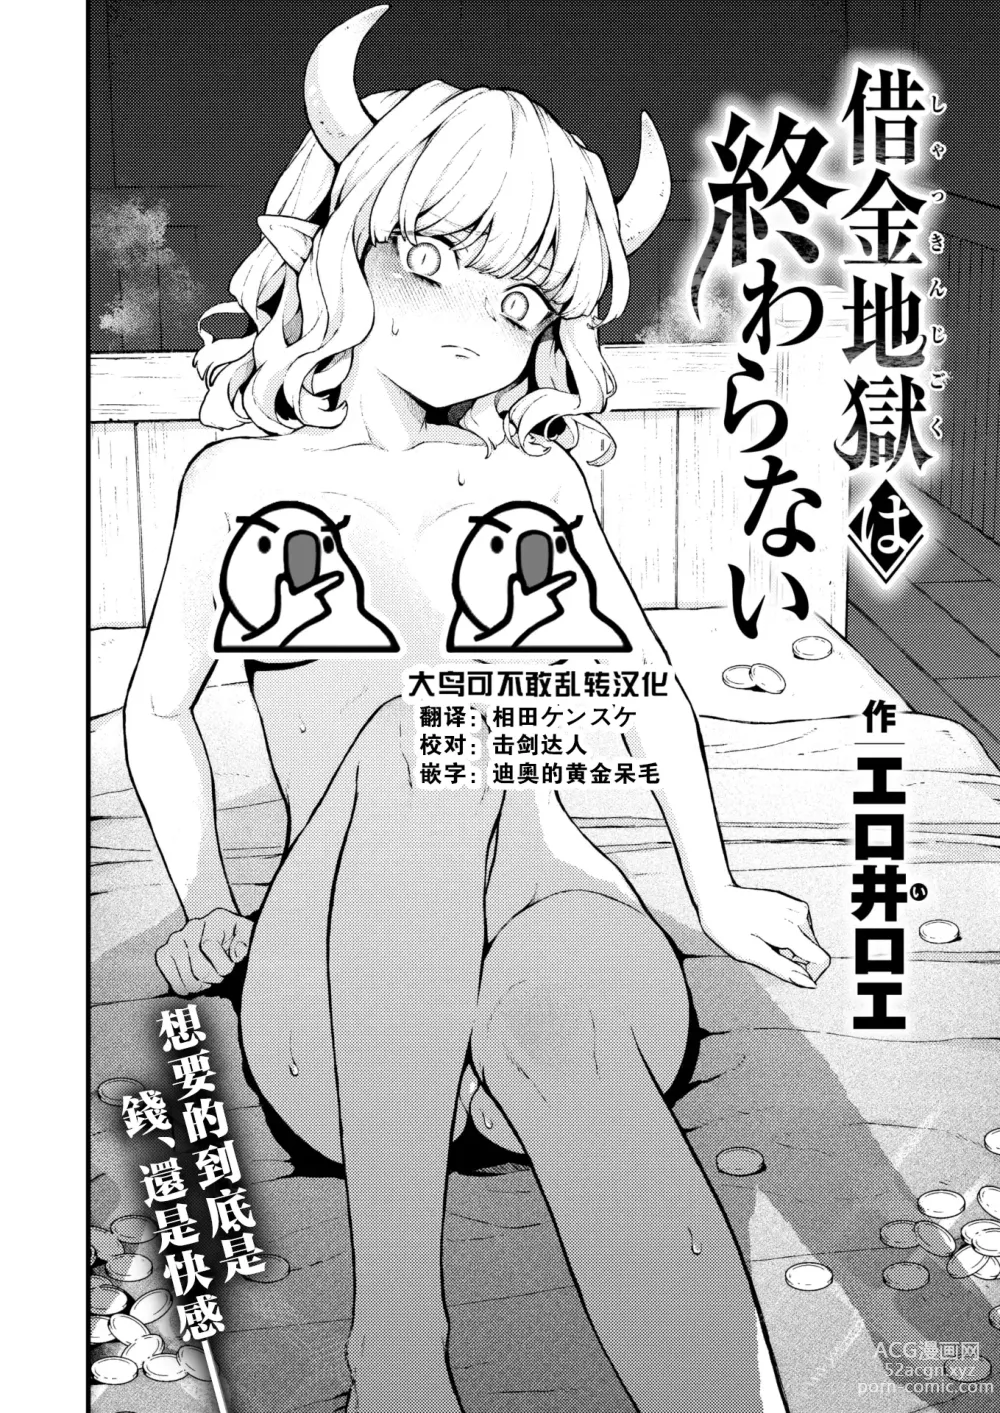 Page 1 of manga Shakkin Jigoku wa Owaranai